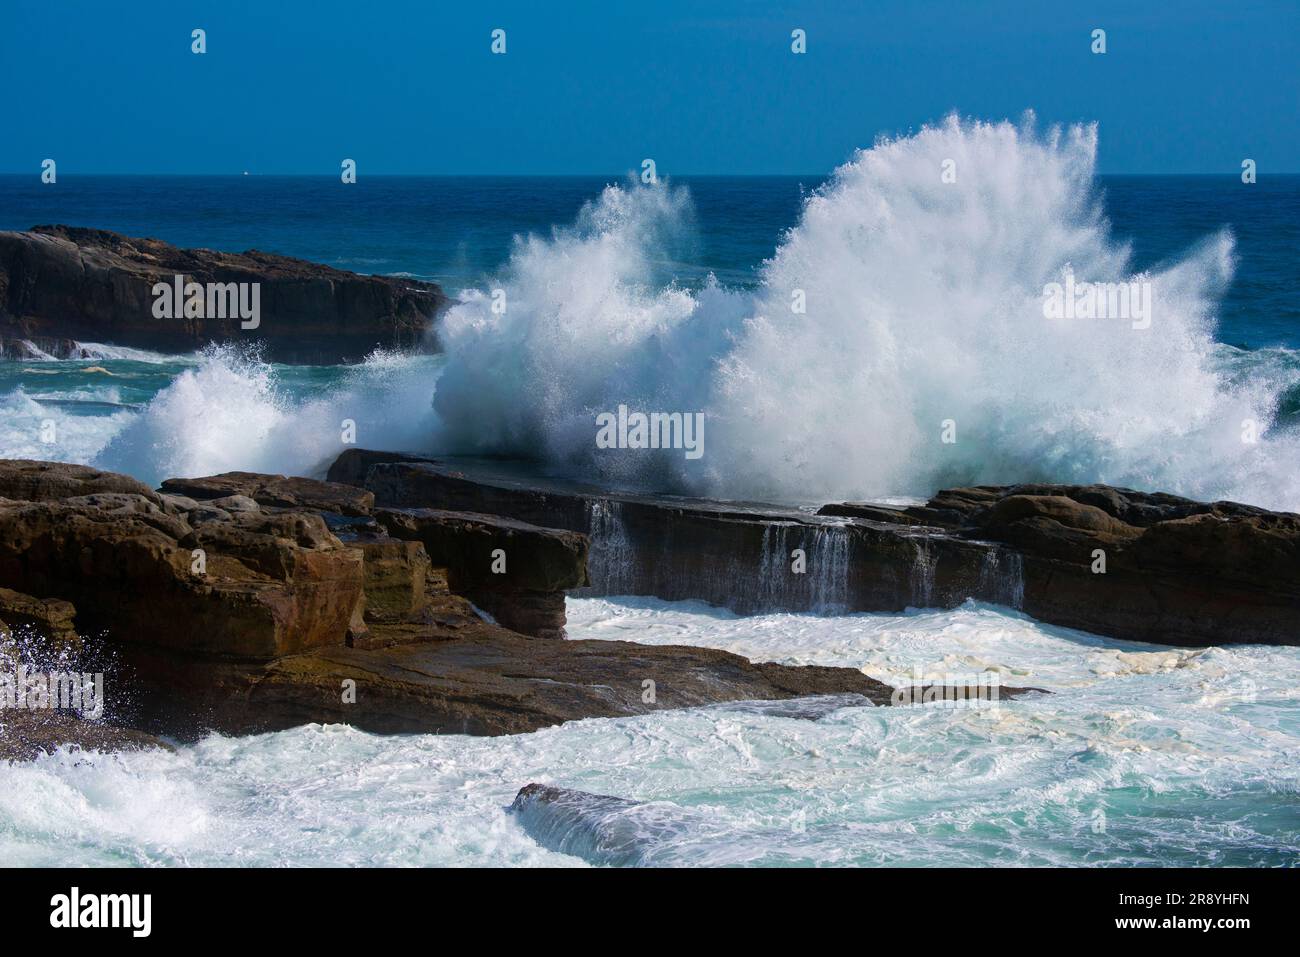 Senjojiki coast and the waves Stock Photo